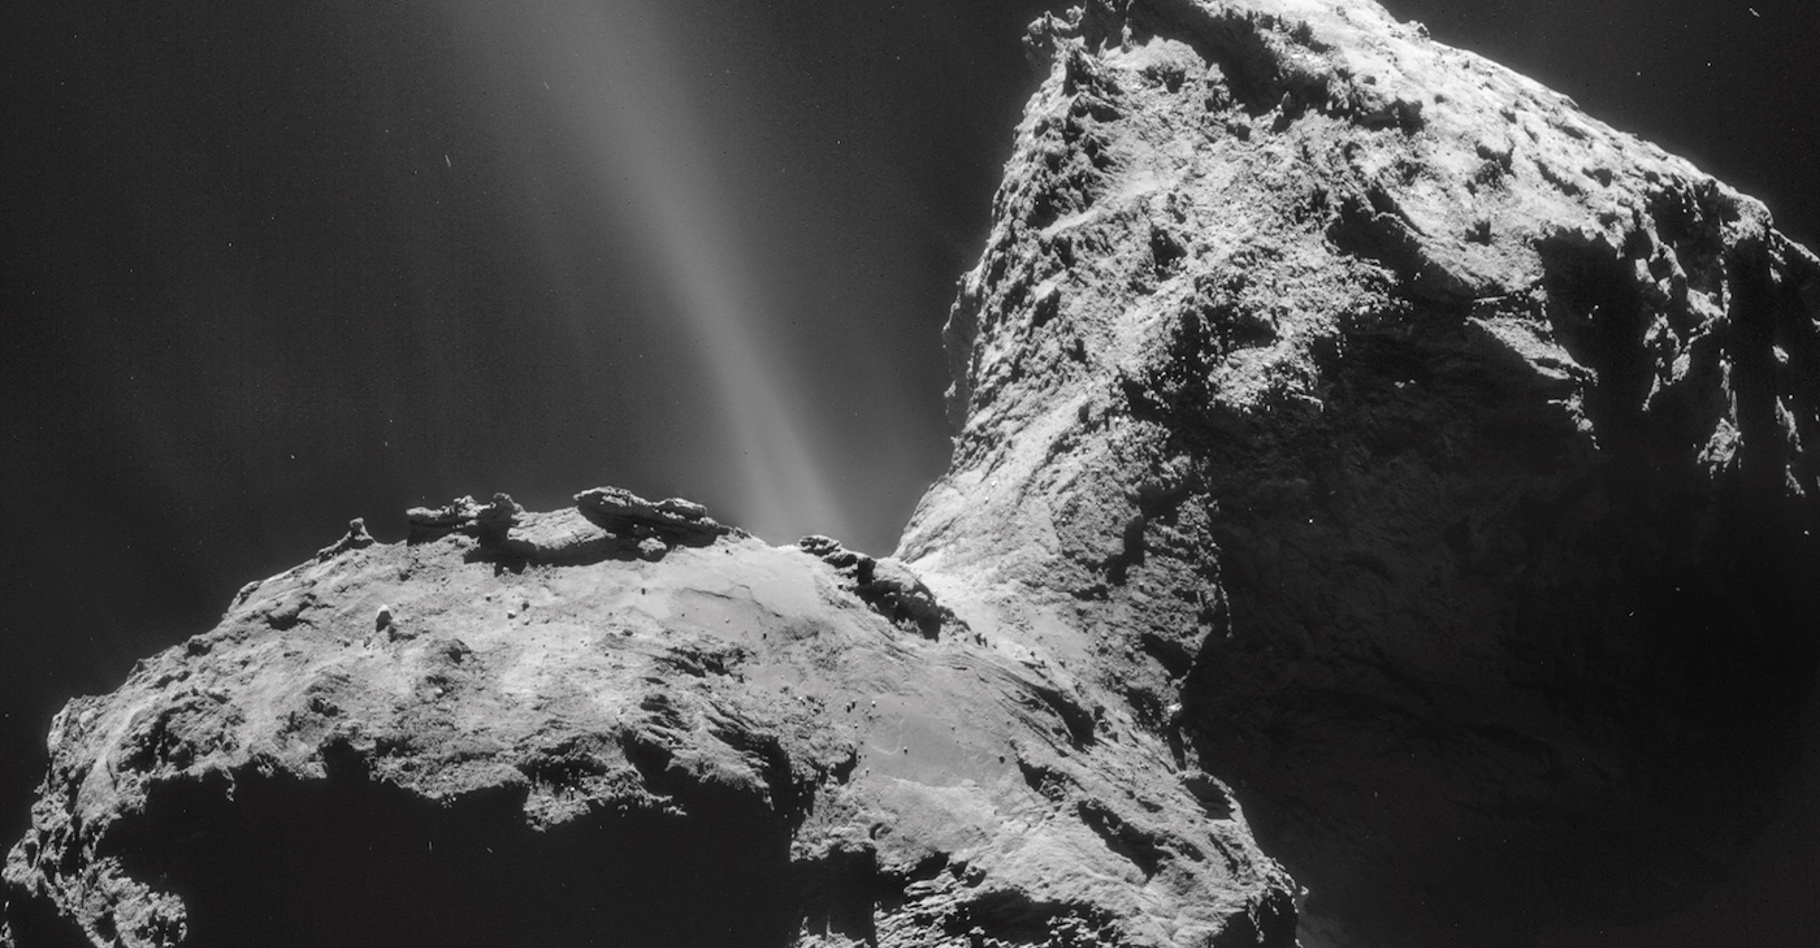 Un sursaut d’activité a été observé par chance par la sonde Rosetta le 19 février 2016 dans la région d’Atum, sur le plus grand des deux lobes de la comète Tchouri. Ici, la comète est&nbsp;photographiée avec la NavCam de Rosetta le 31 janvier 2015 (mosaïque de 4 images). Depuis de longs mois, l’activité la plus forte est observée dans la région du cou. © Esa, Rosetta, NavCam – CC BY-SA IGO 3.0